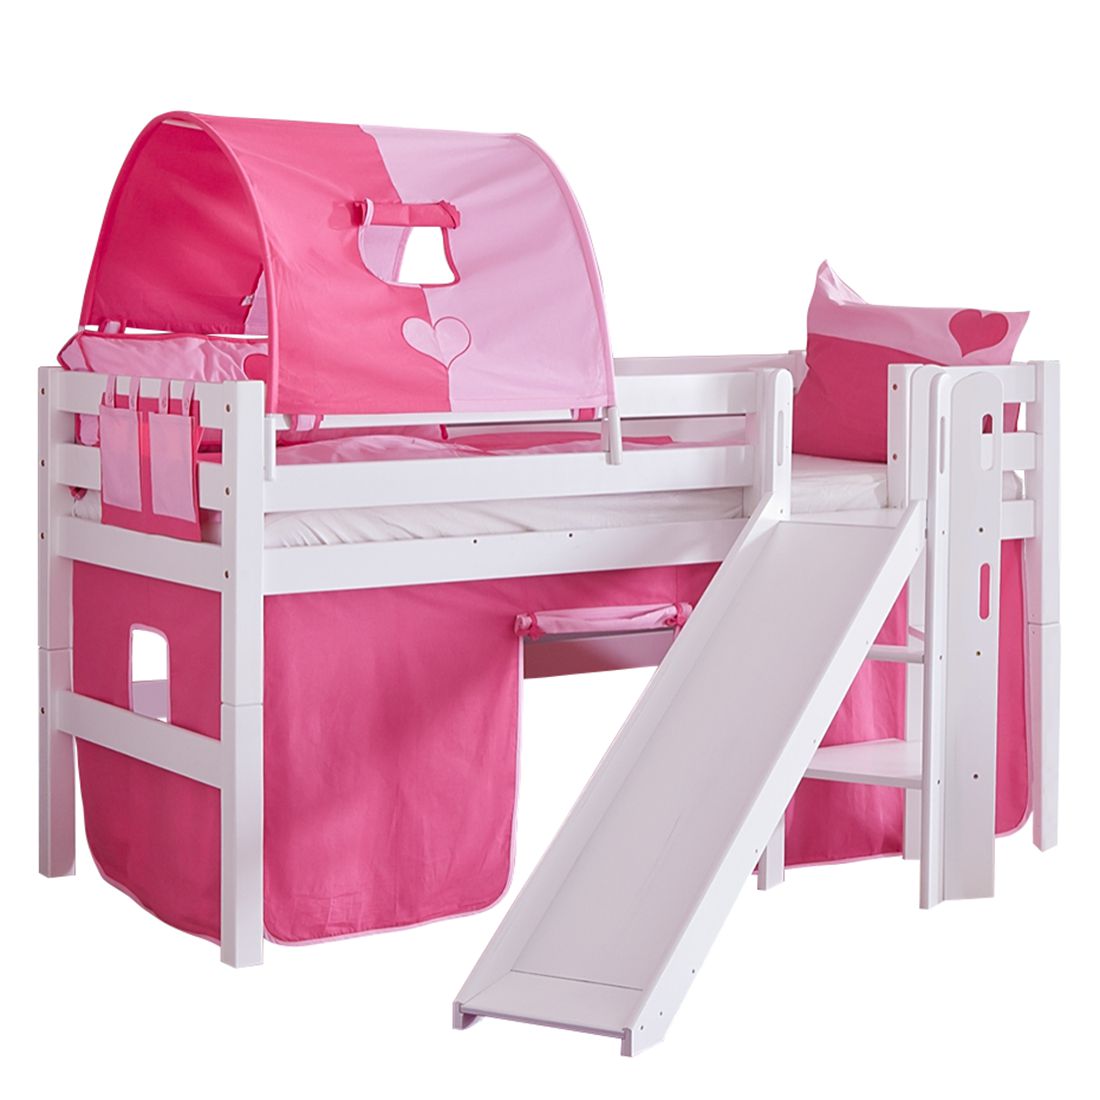 Spielbett Eliyas - mit Rutsche, Vorhang, Tunnel und Tasche - Buche weiß/Textil pink-herz, Relita